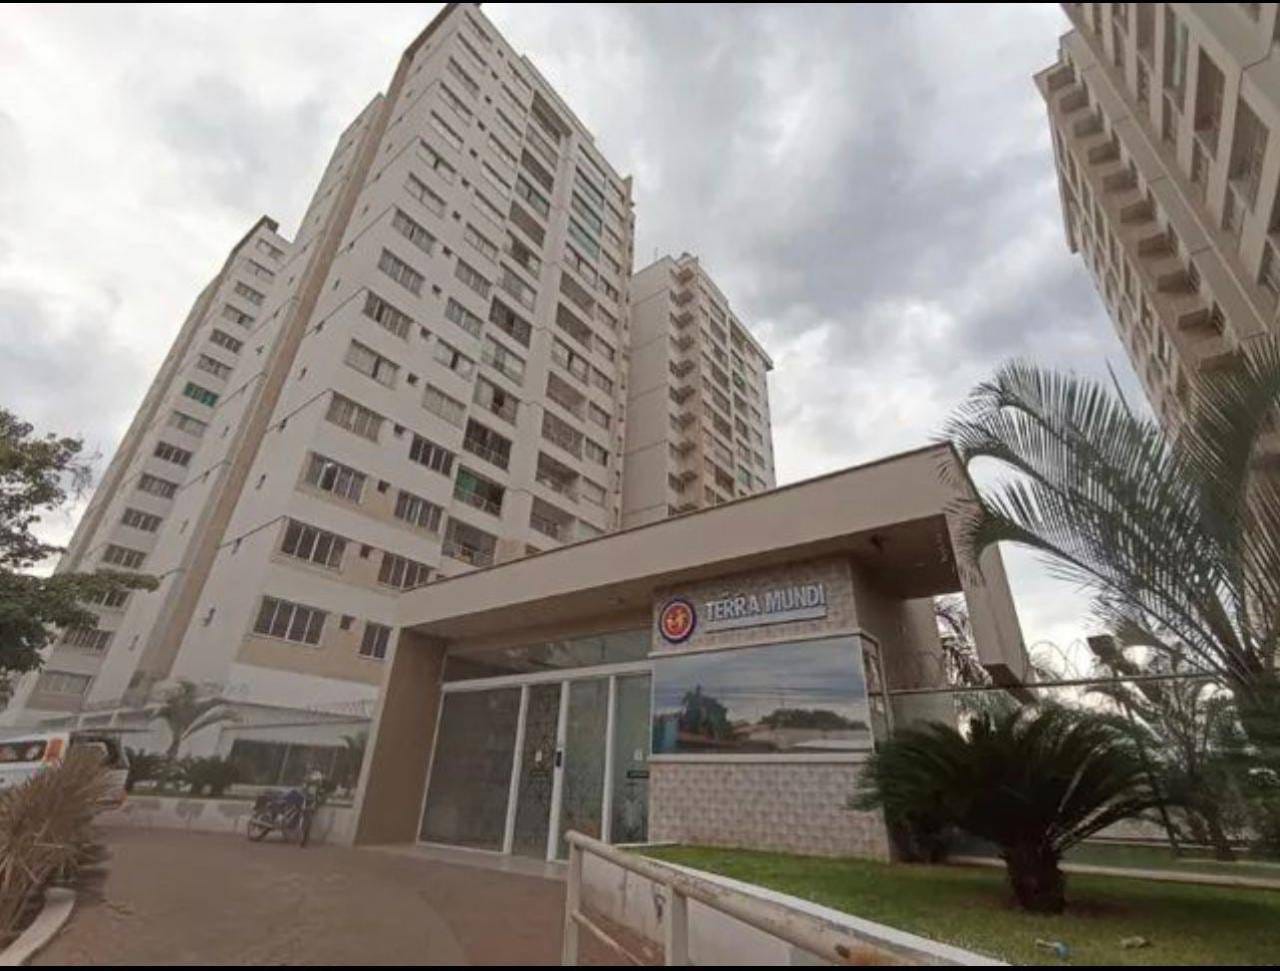 Apartamento em Parque Industrial Paulista, Goiânia/GO de 82m² 3 quartos à venda por R$ 299.000,00